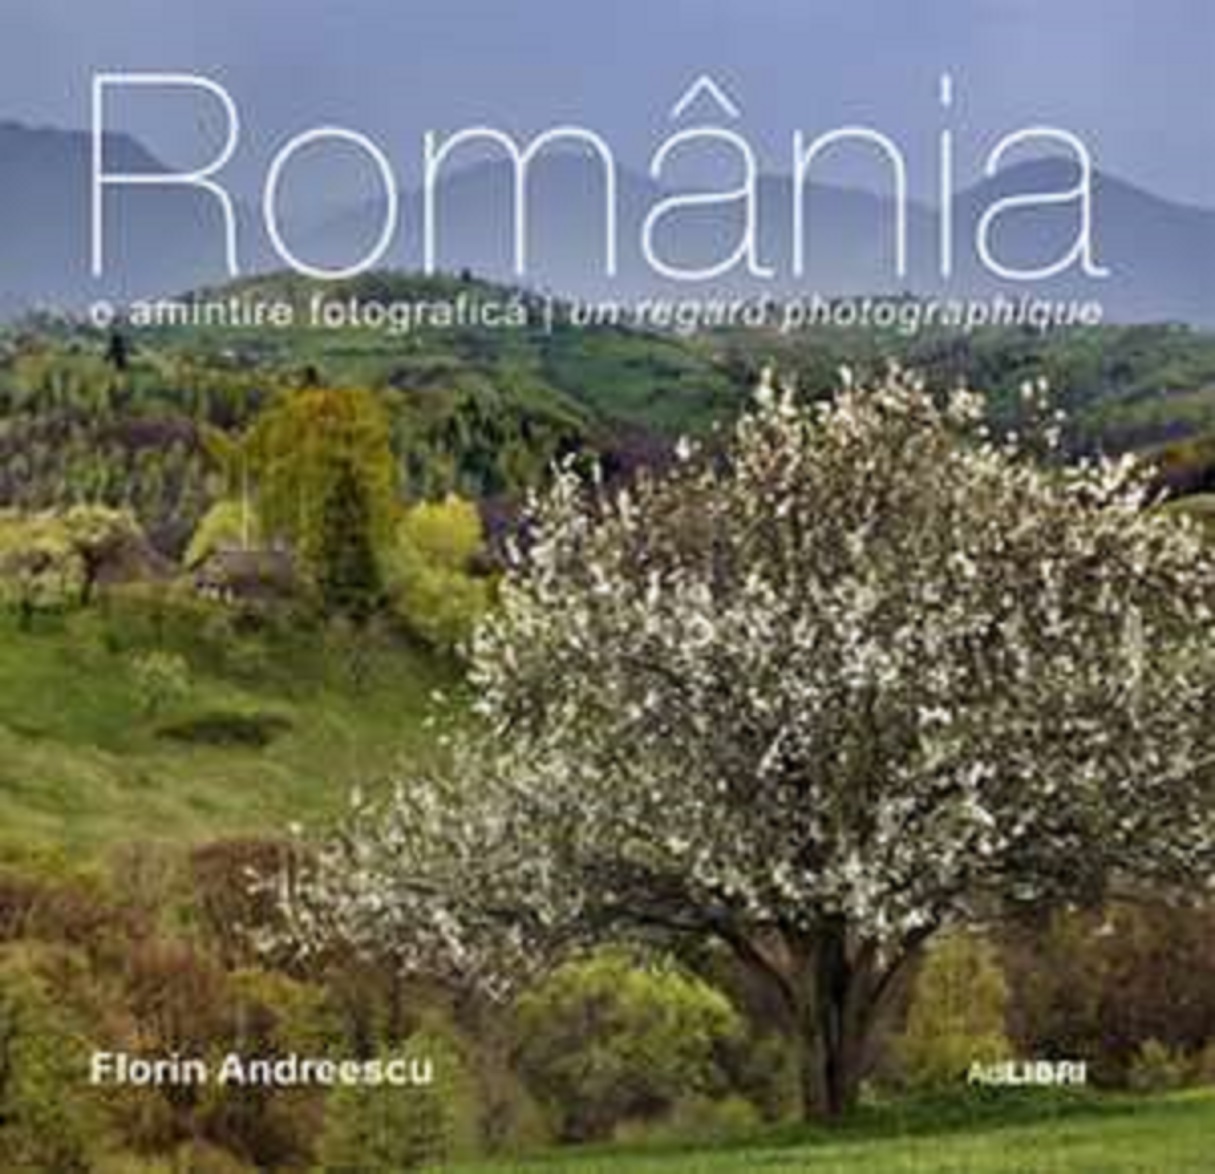 Poze Romania | Florin Andreescu